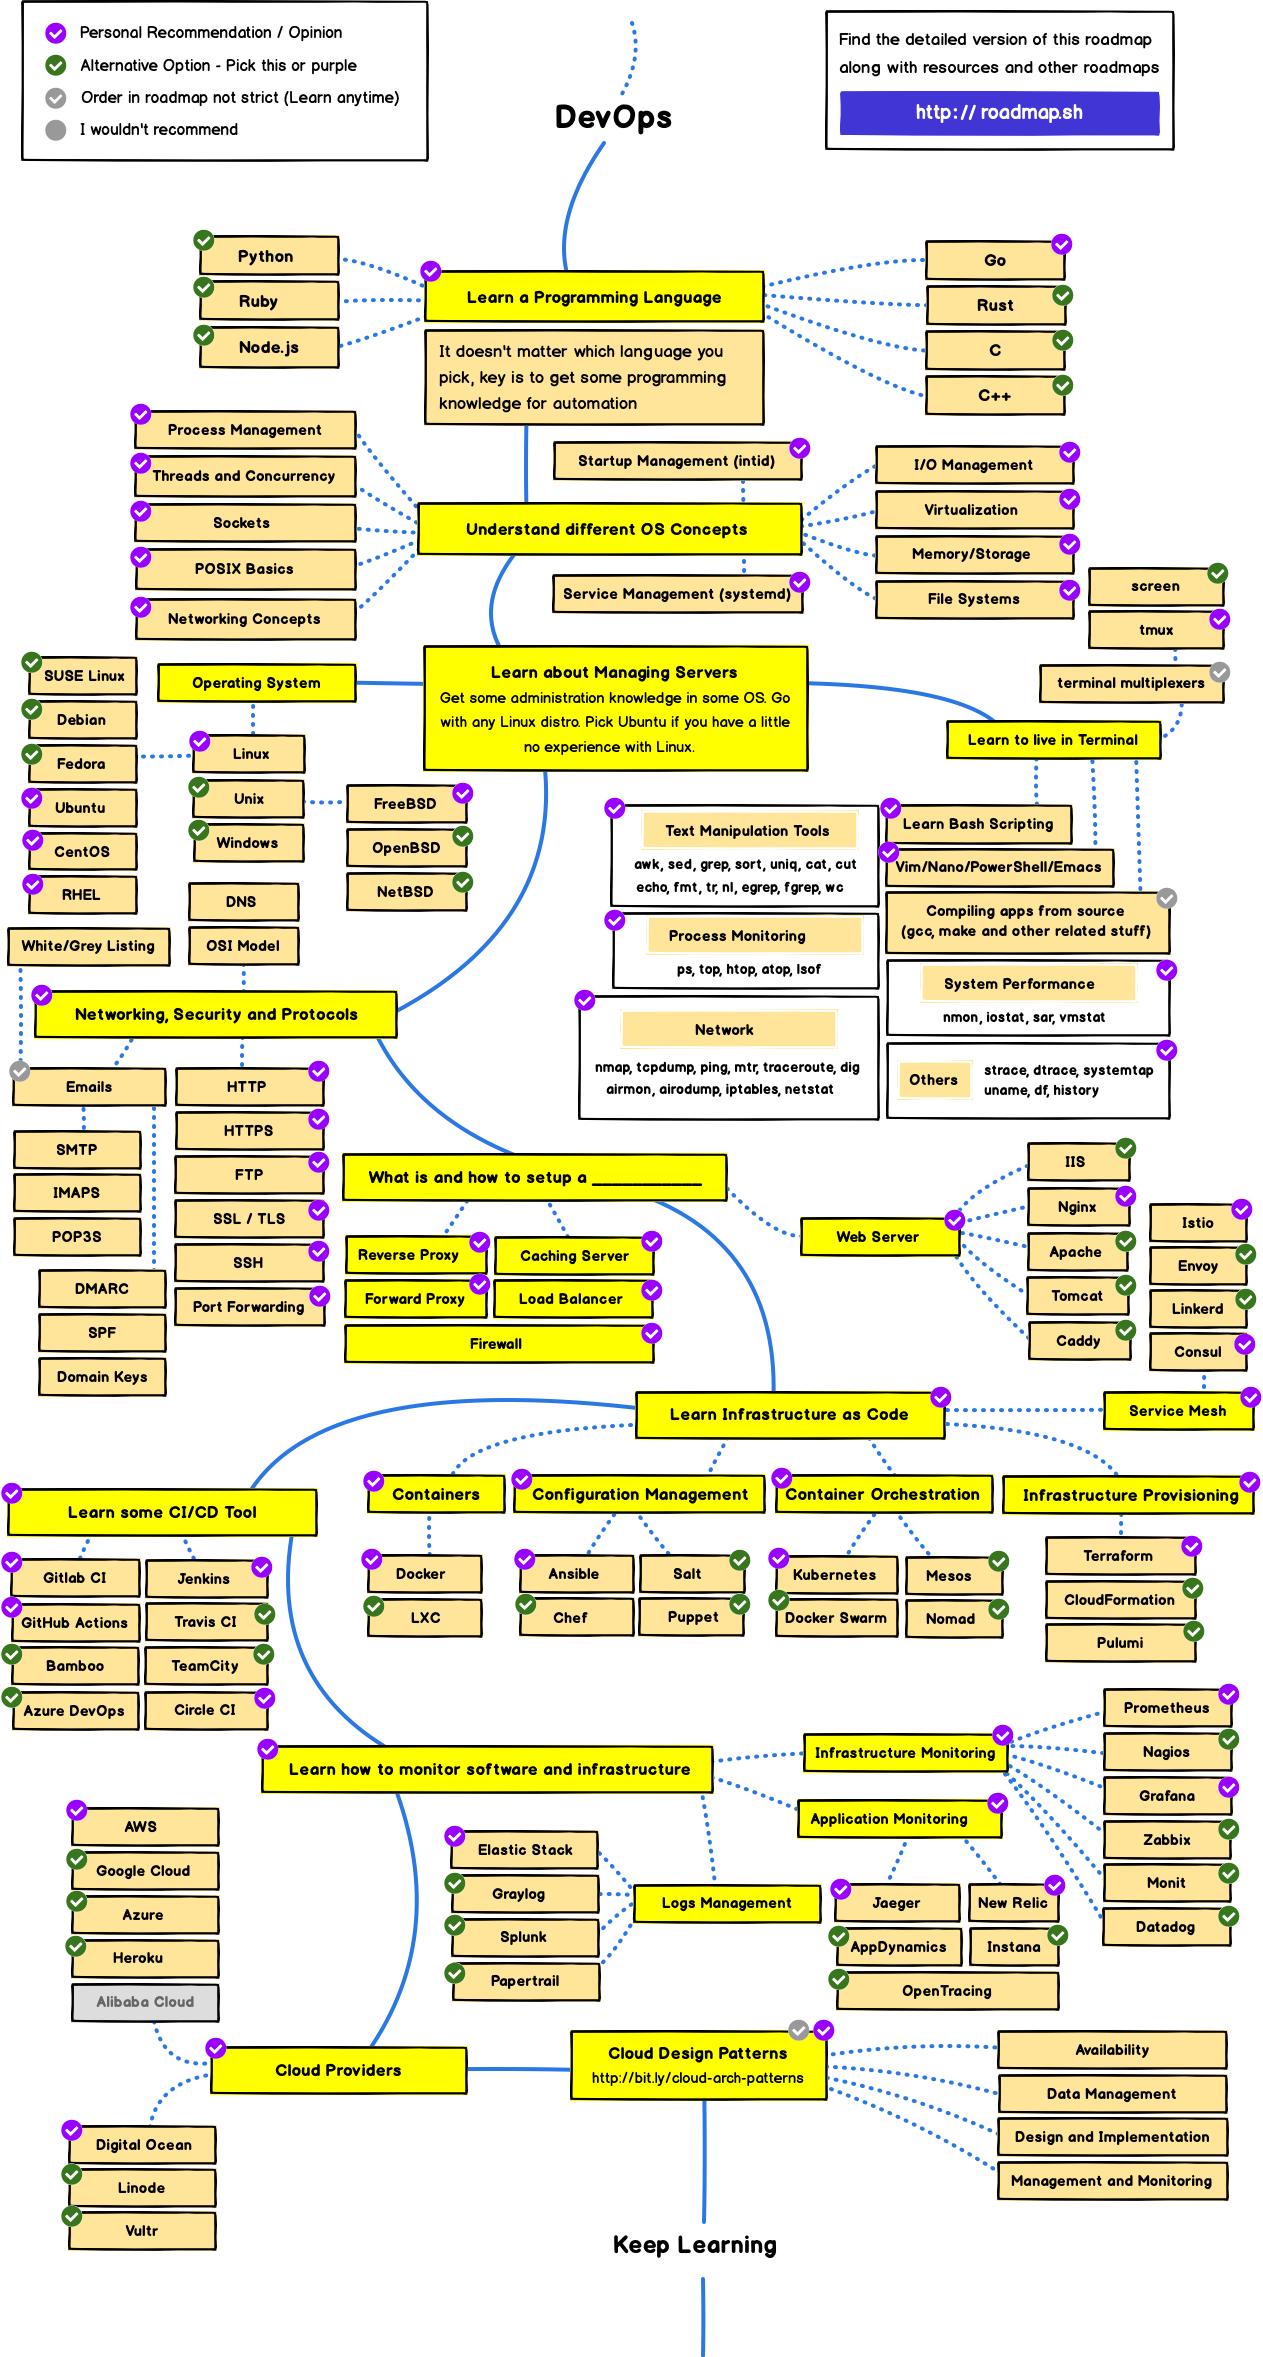 2021 Web Developer Roadmap